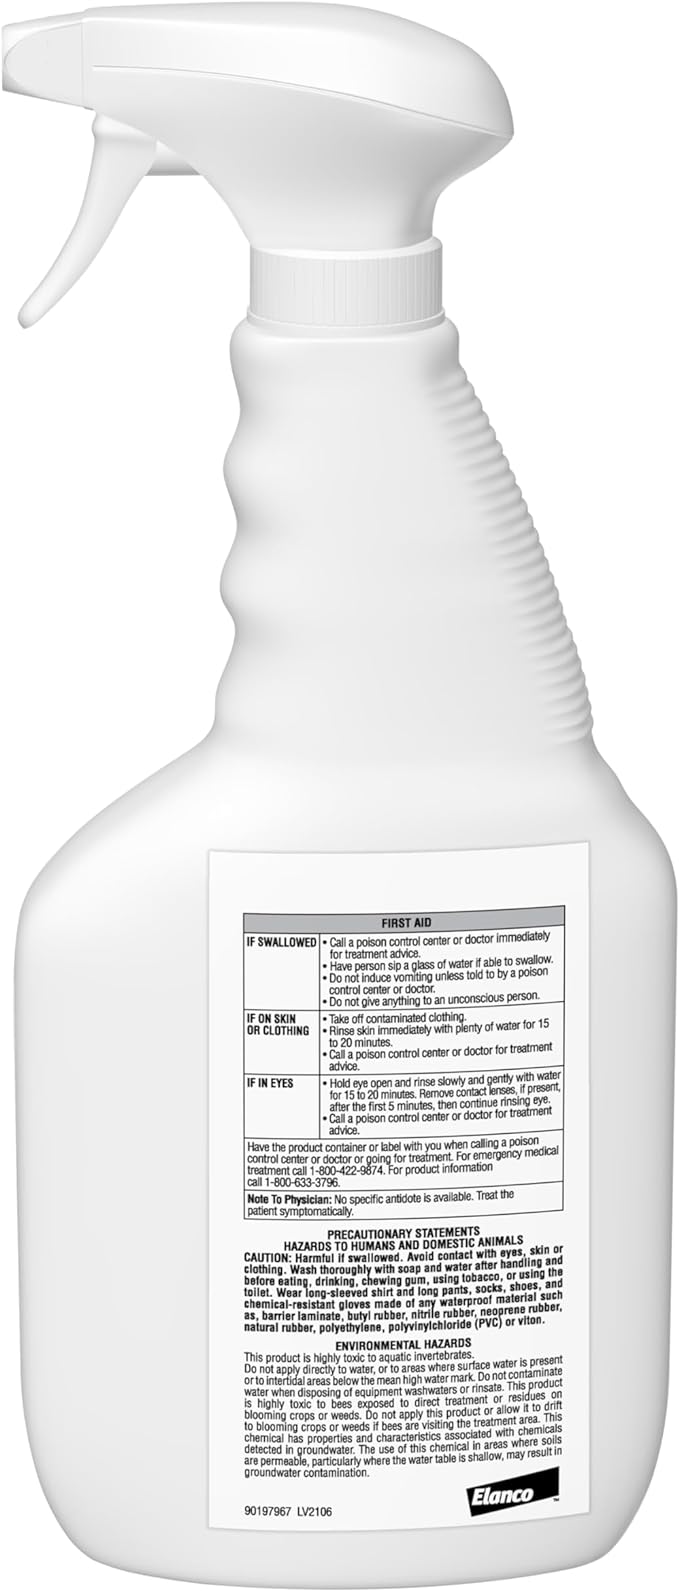 QuickBayt-Spot-Spray-3-oz-24-oz-bottle